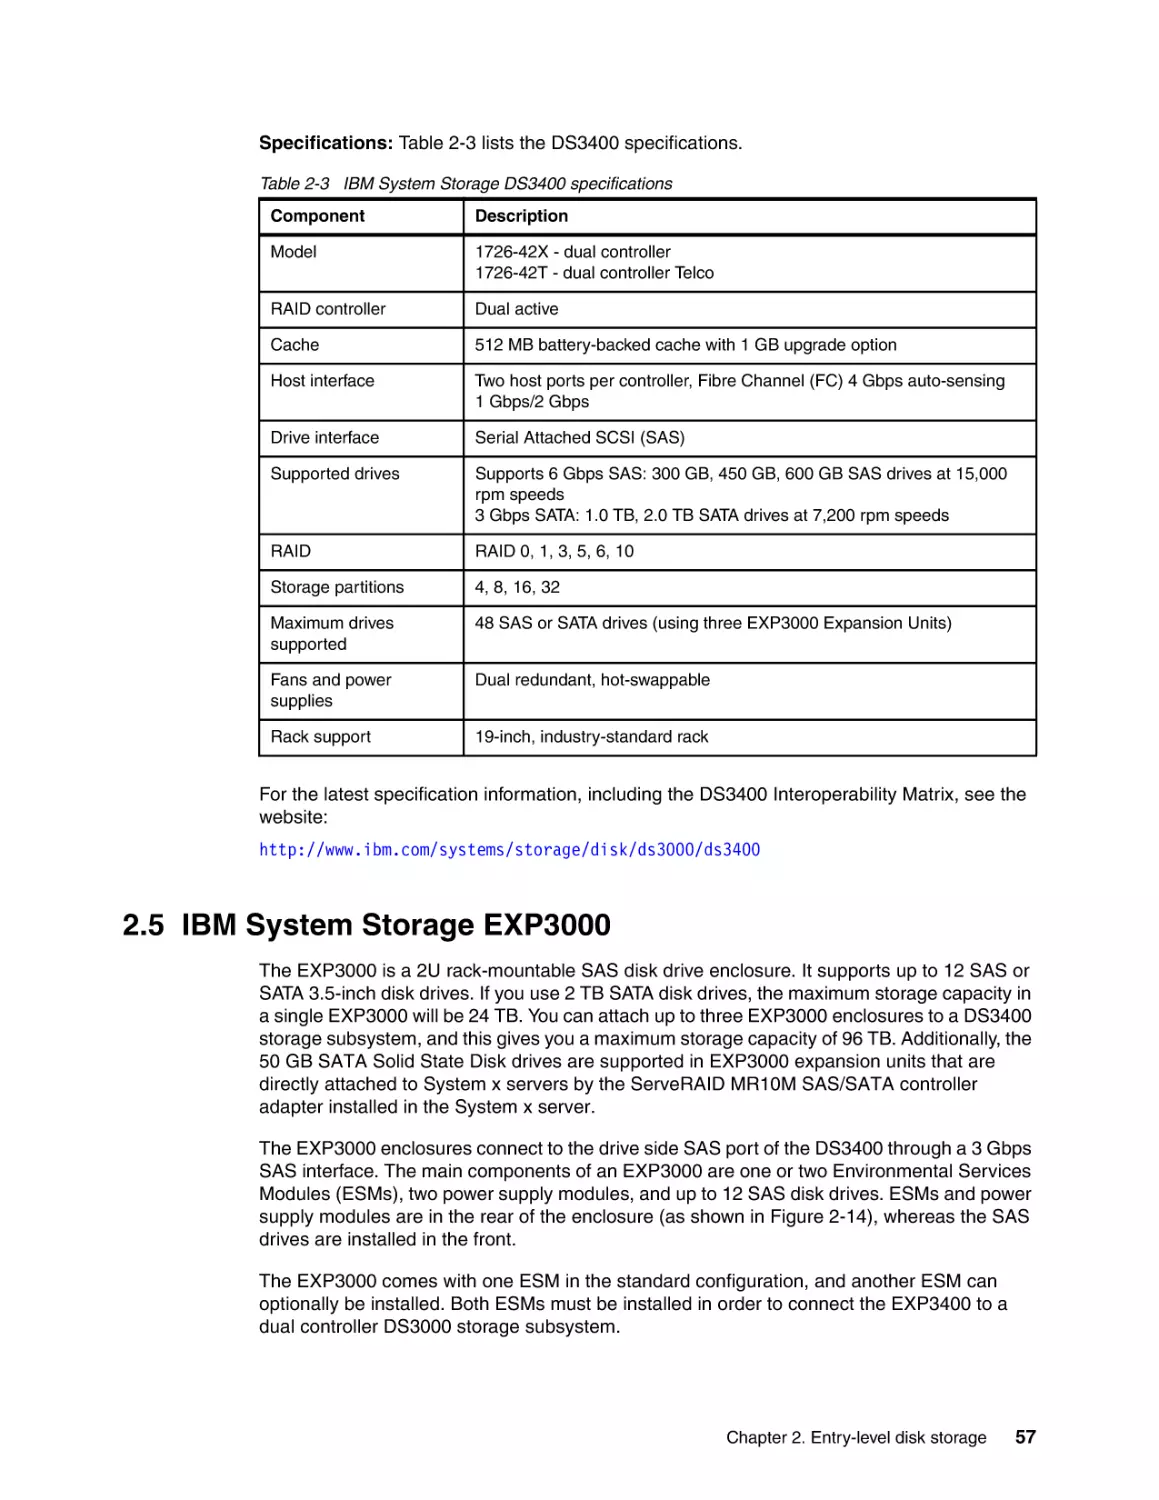 2.5 IBM System Storage EXP3000